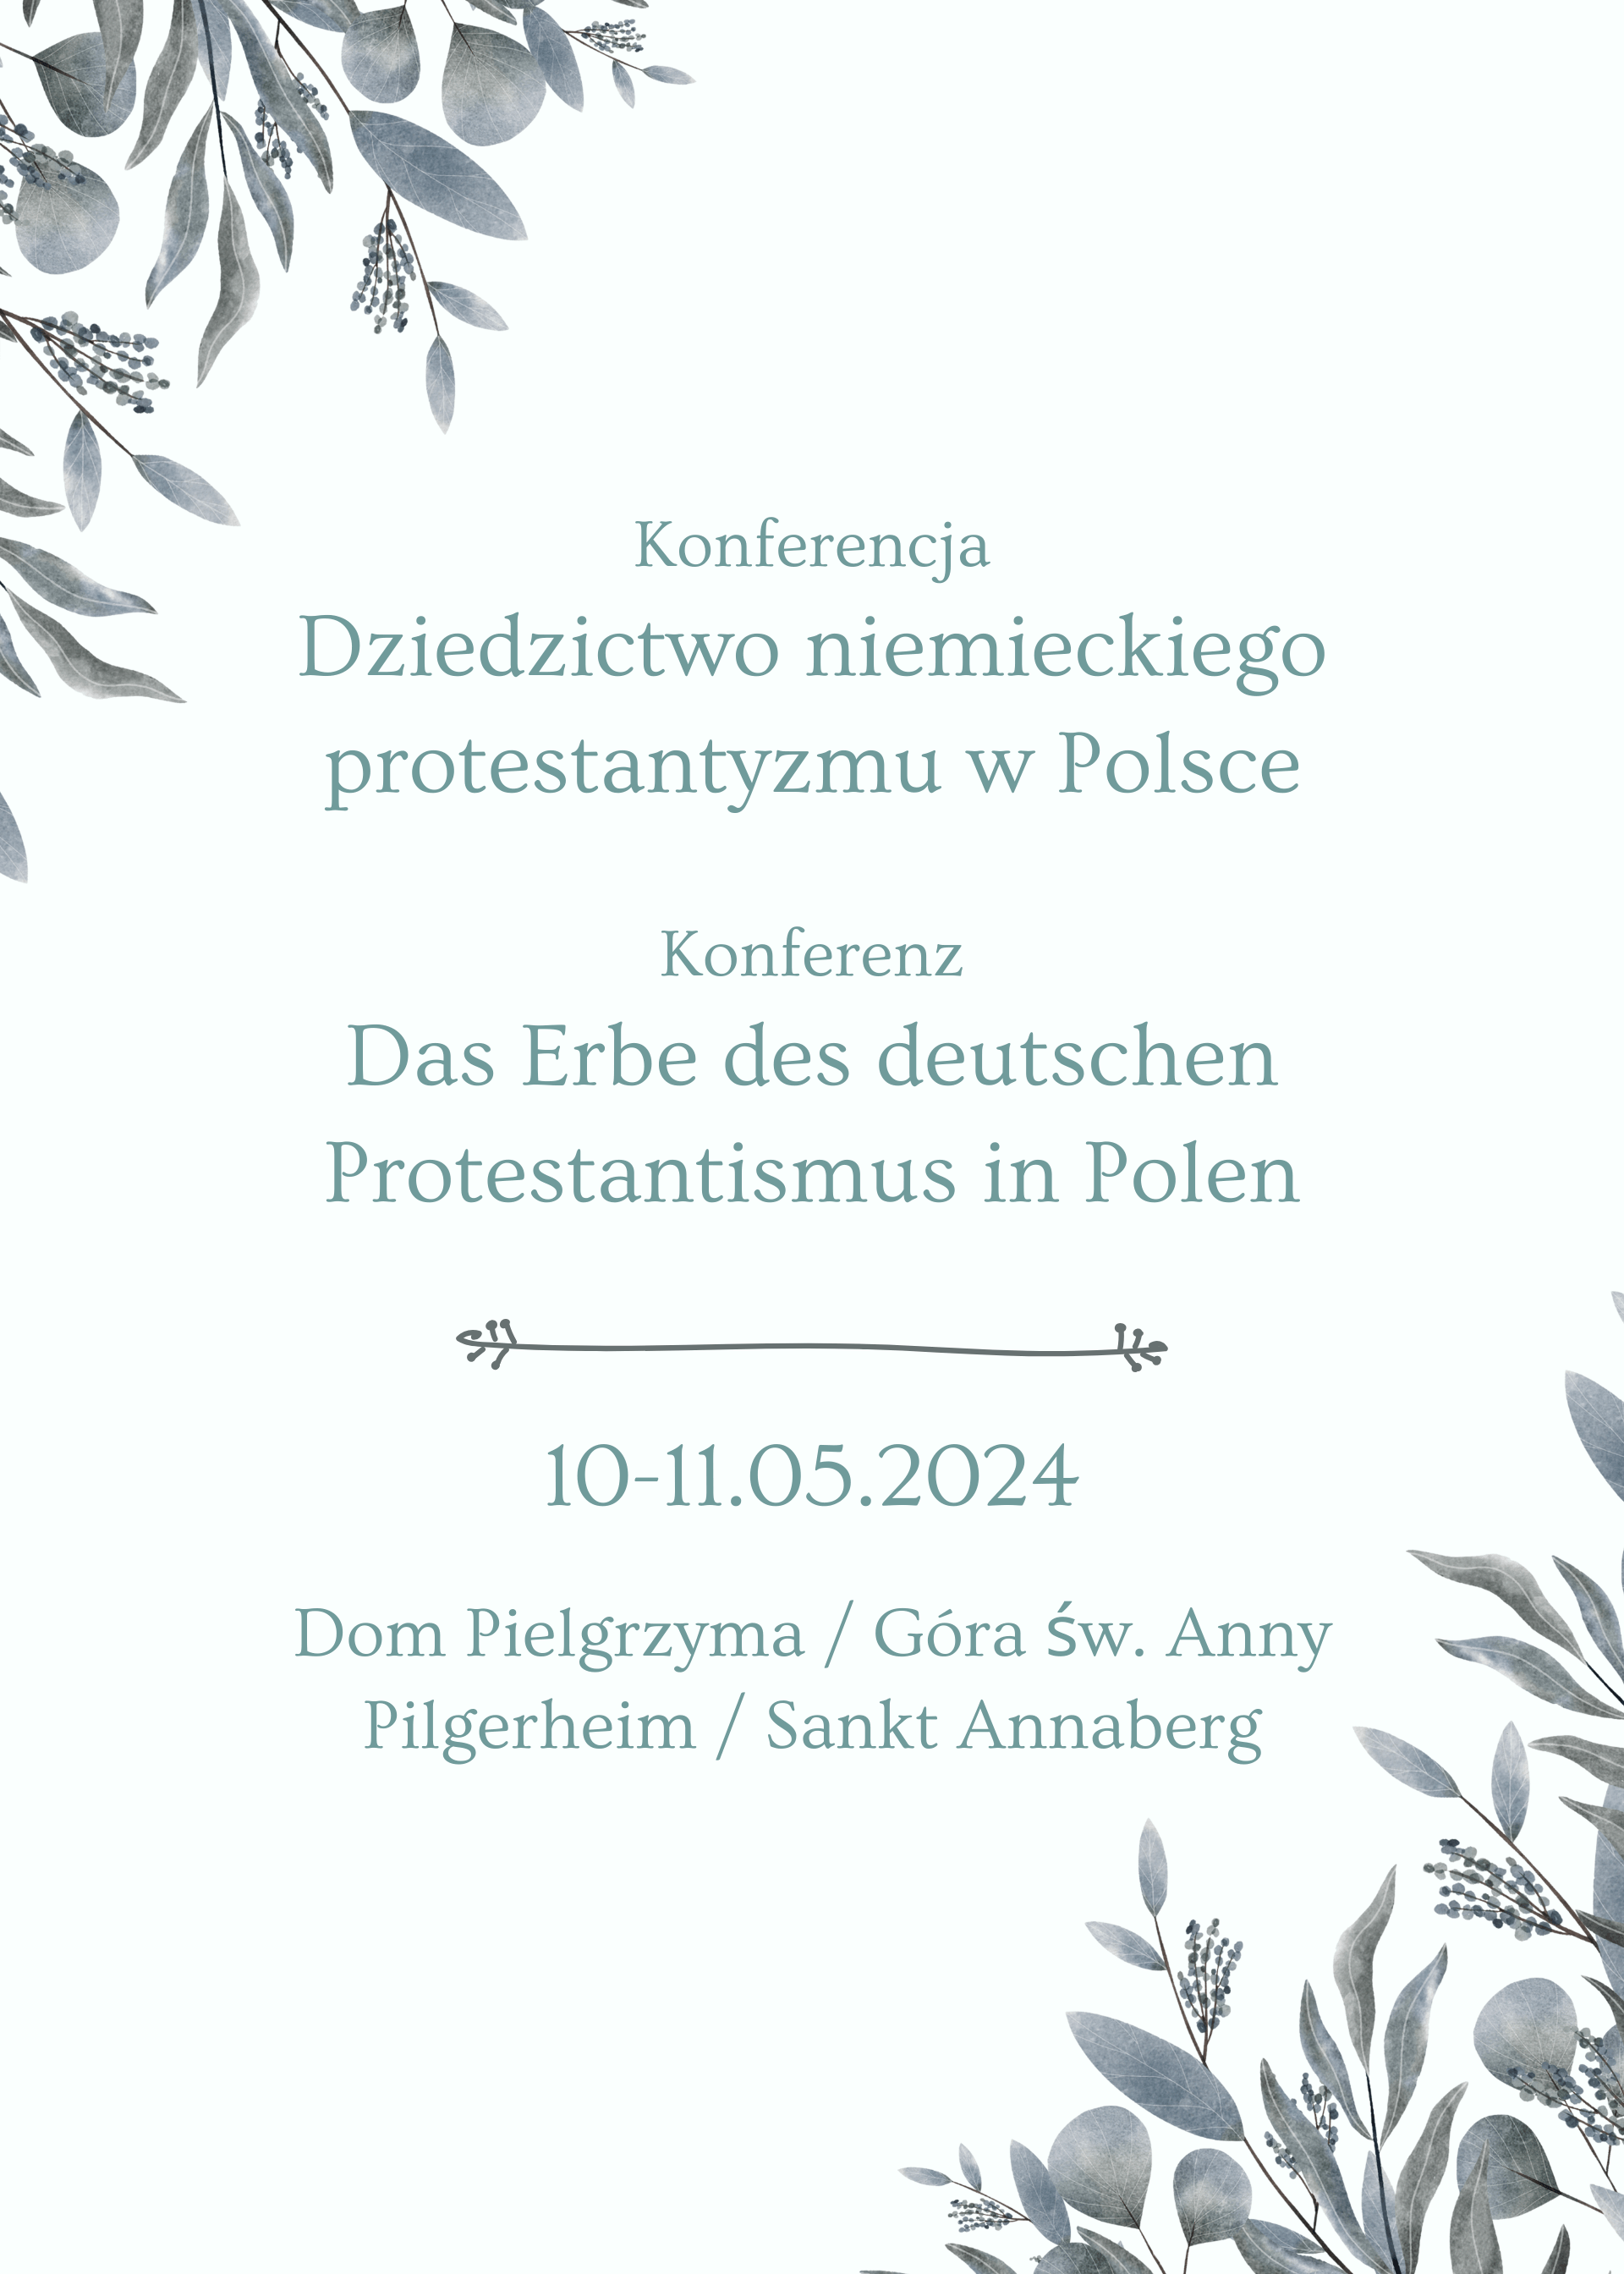 Einladung zur Konferenz „Das Erbe des deutschen Protestantismus in Polen“